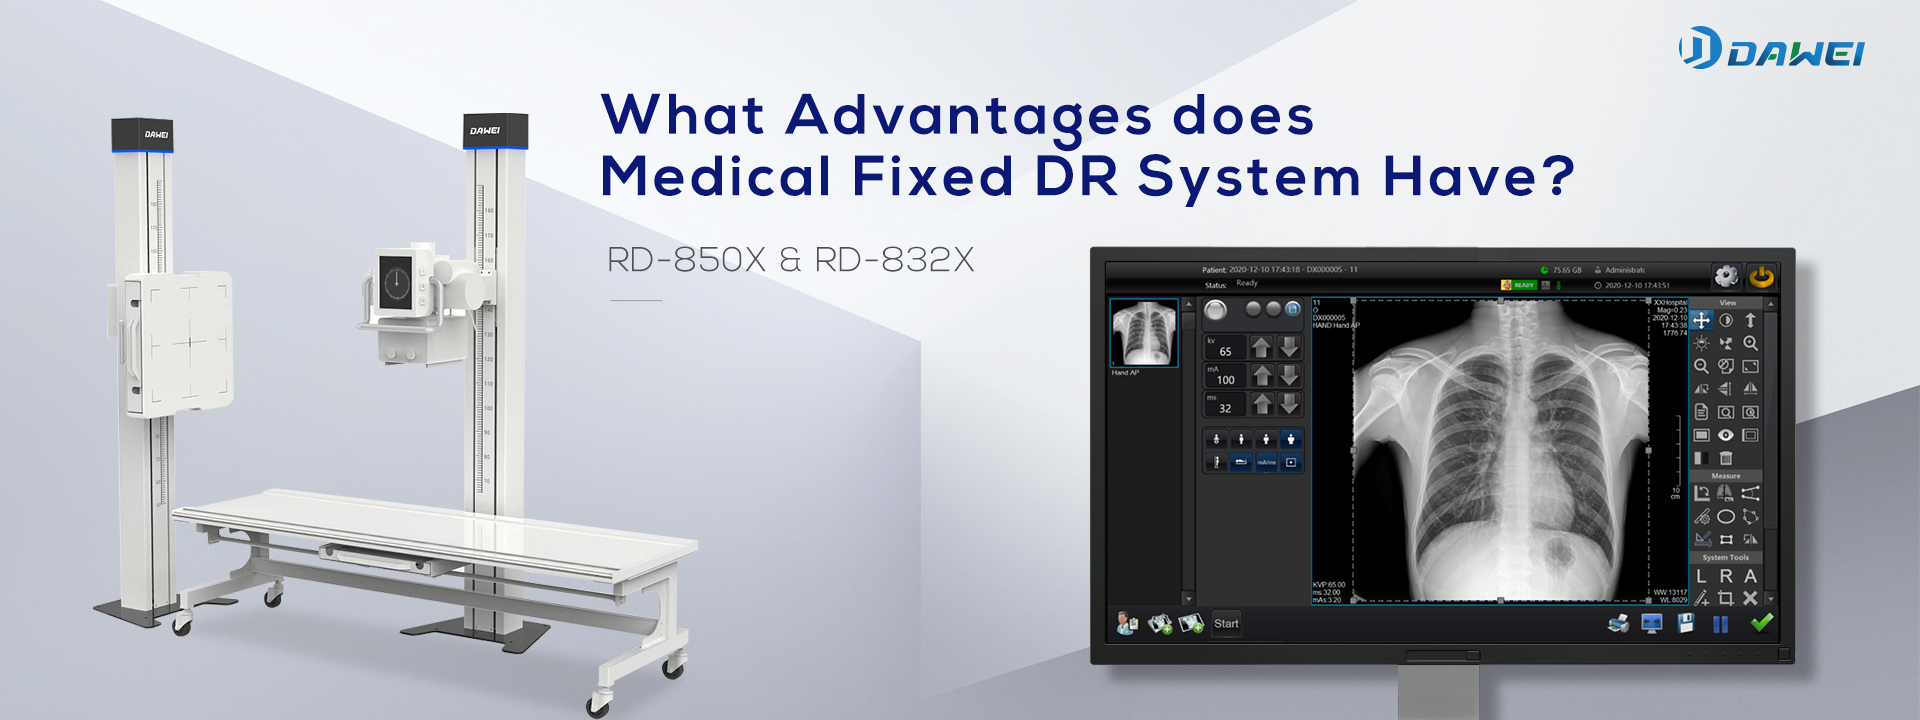 Kādas ir medicīniskās fiksētās DR sistēmas priekšrocības?